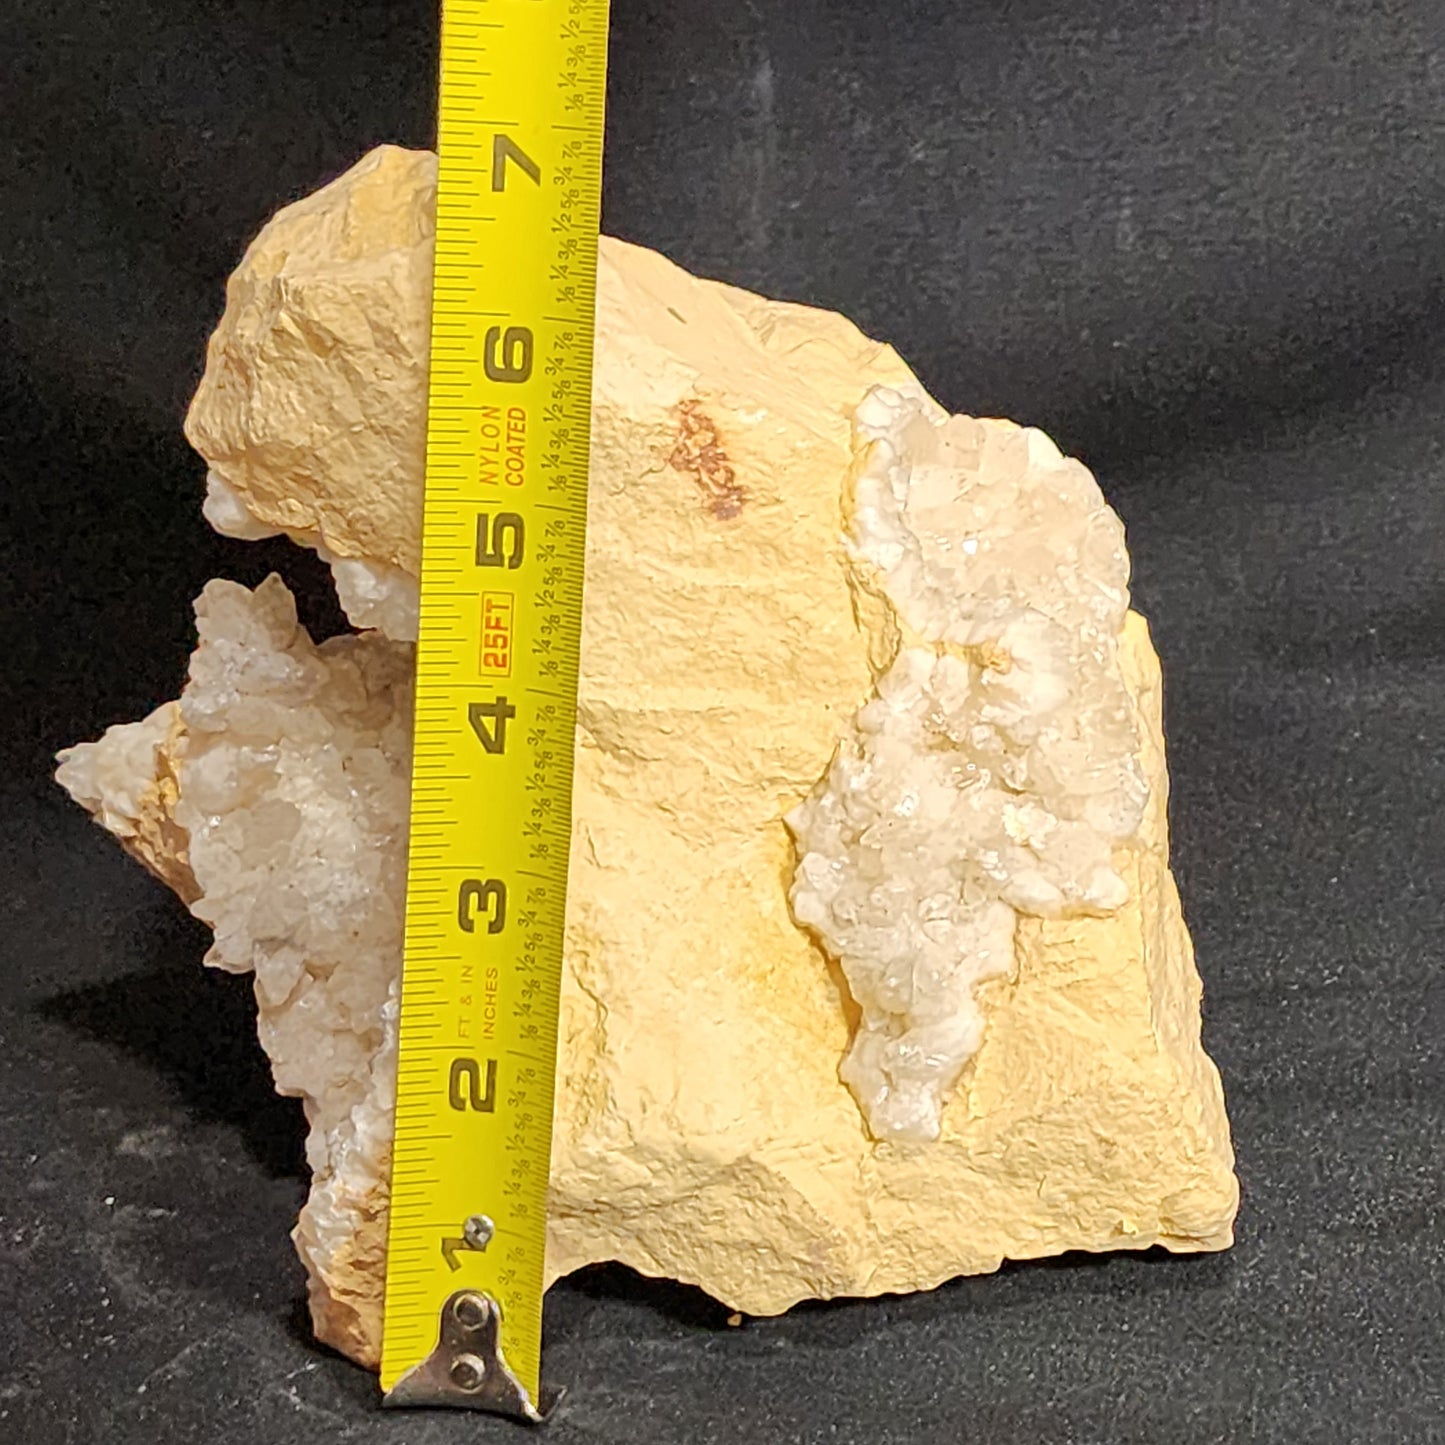 Unique Shaped Calcite Geode